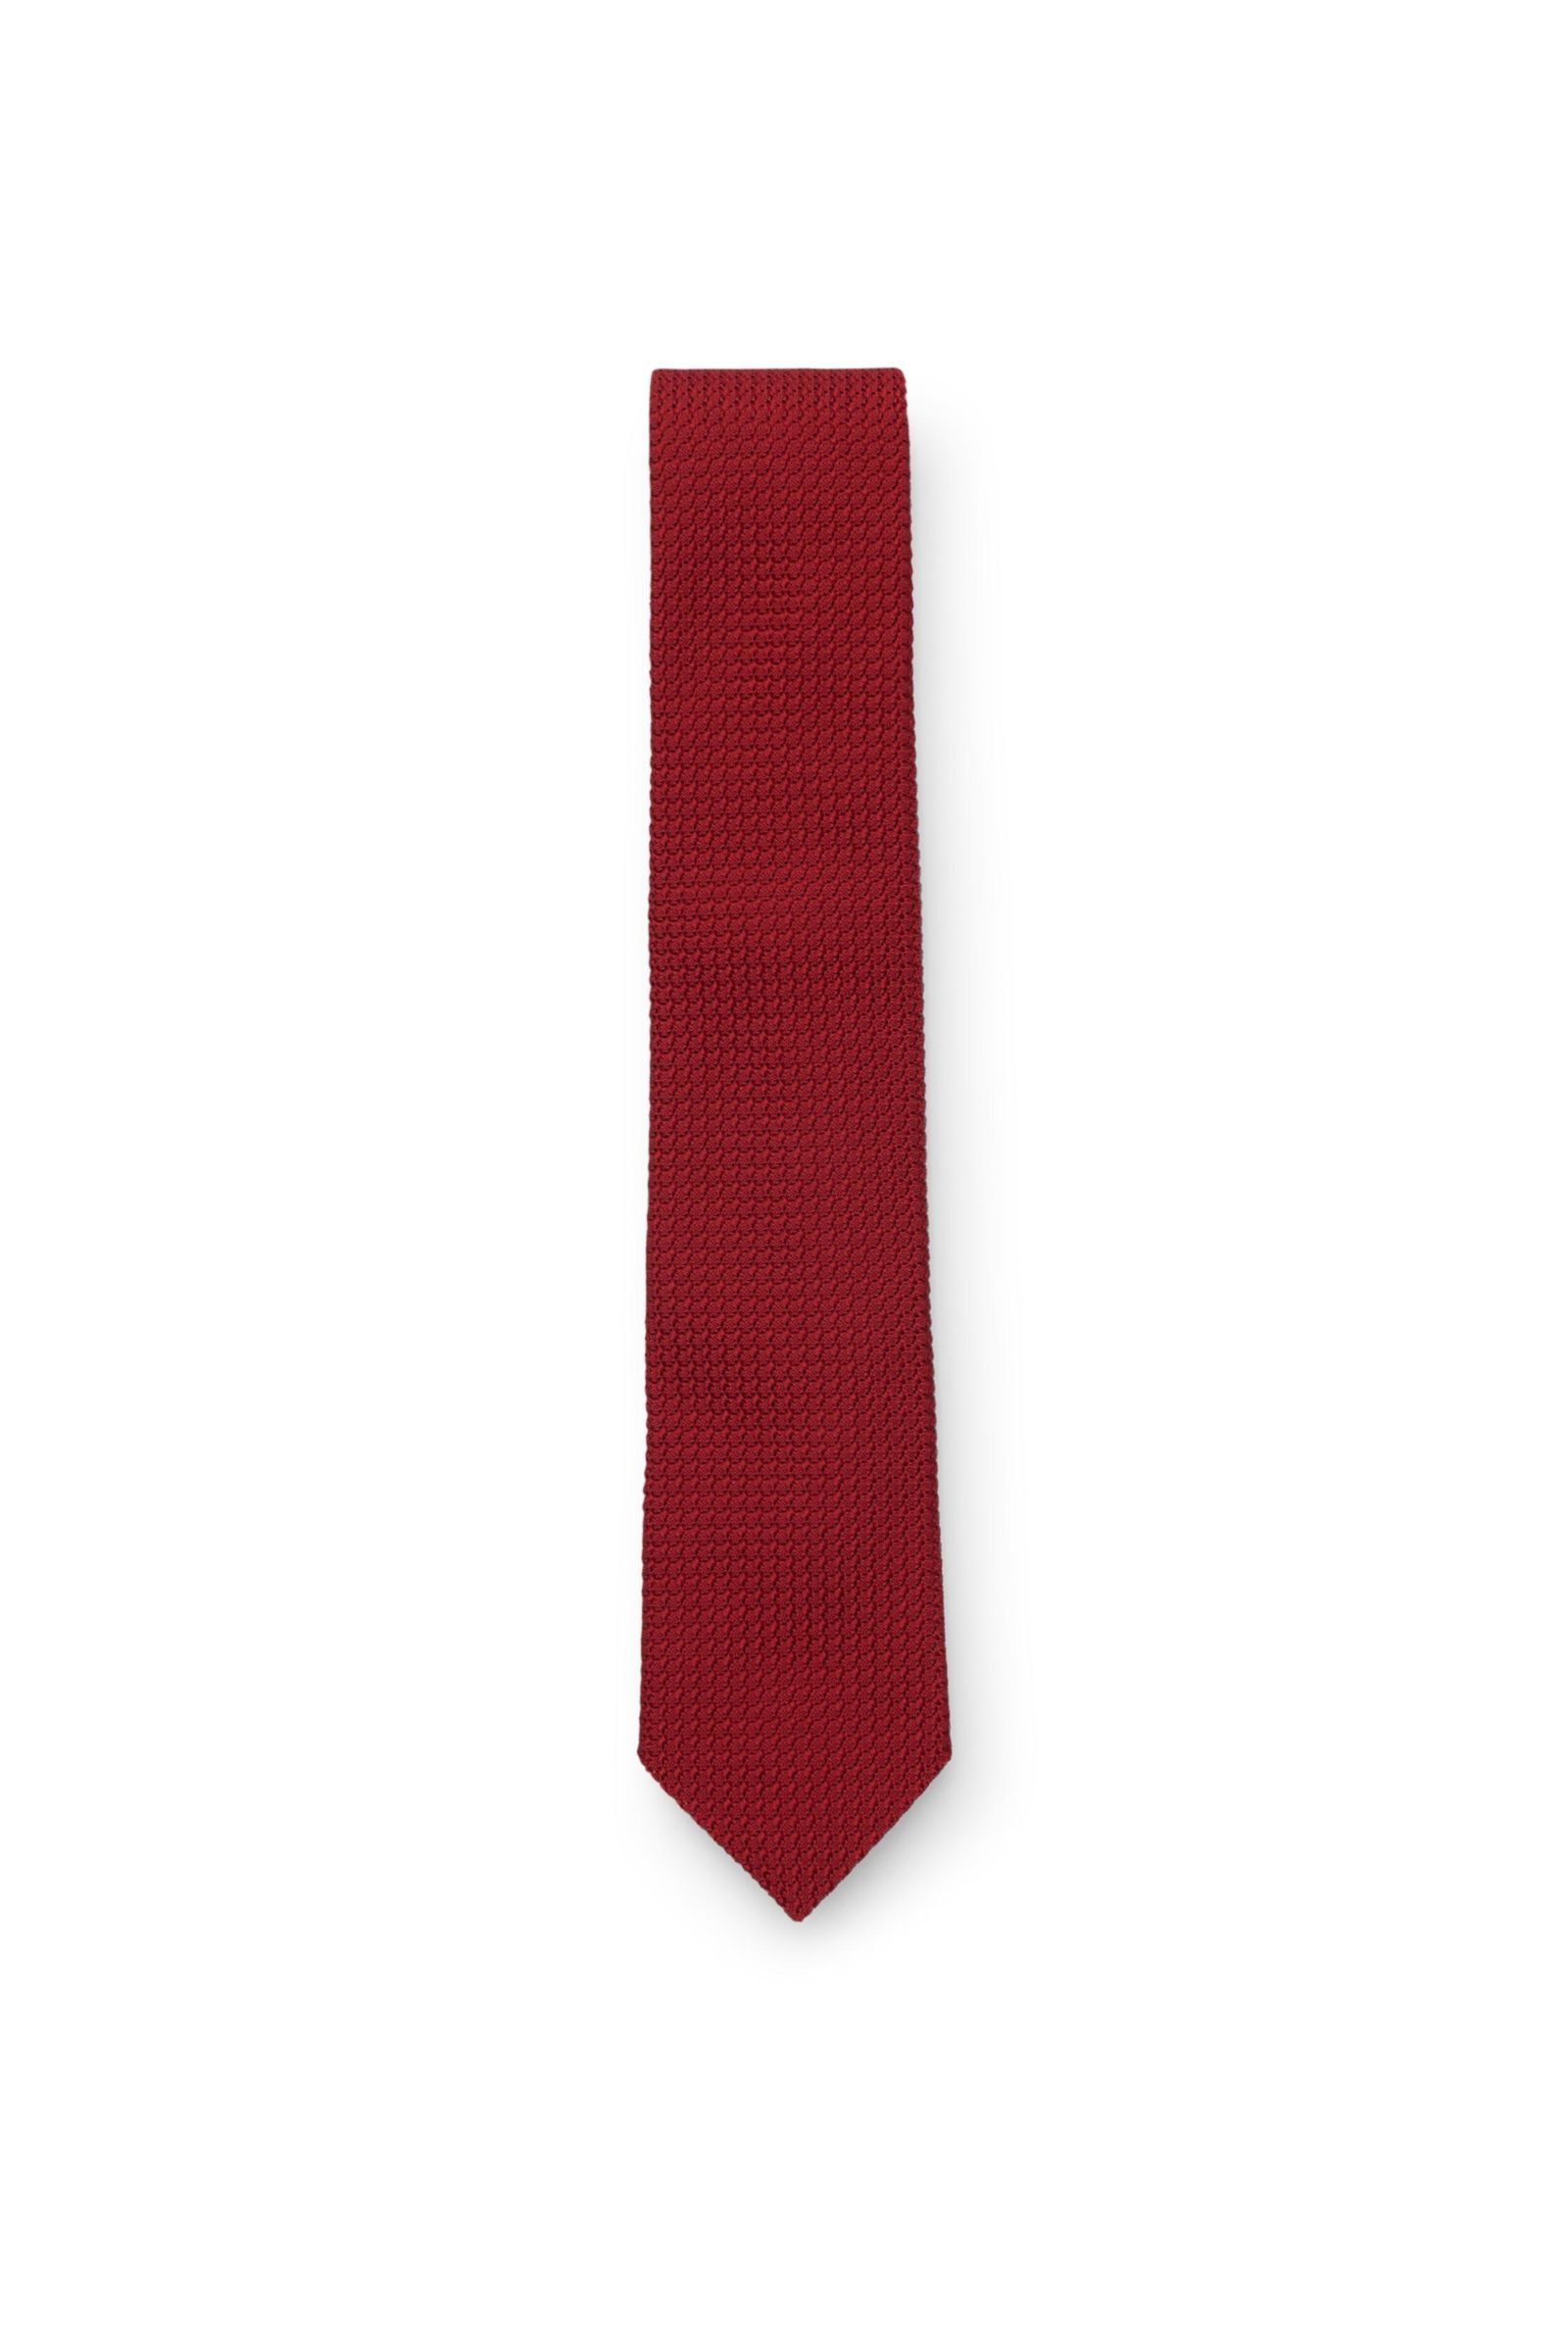 Silk tie red